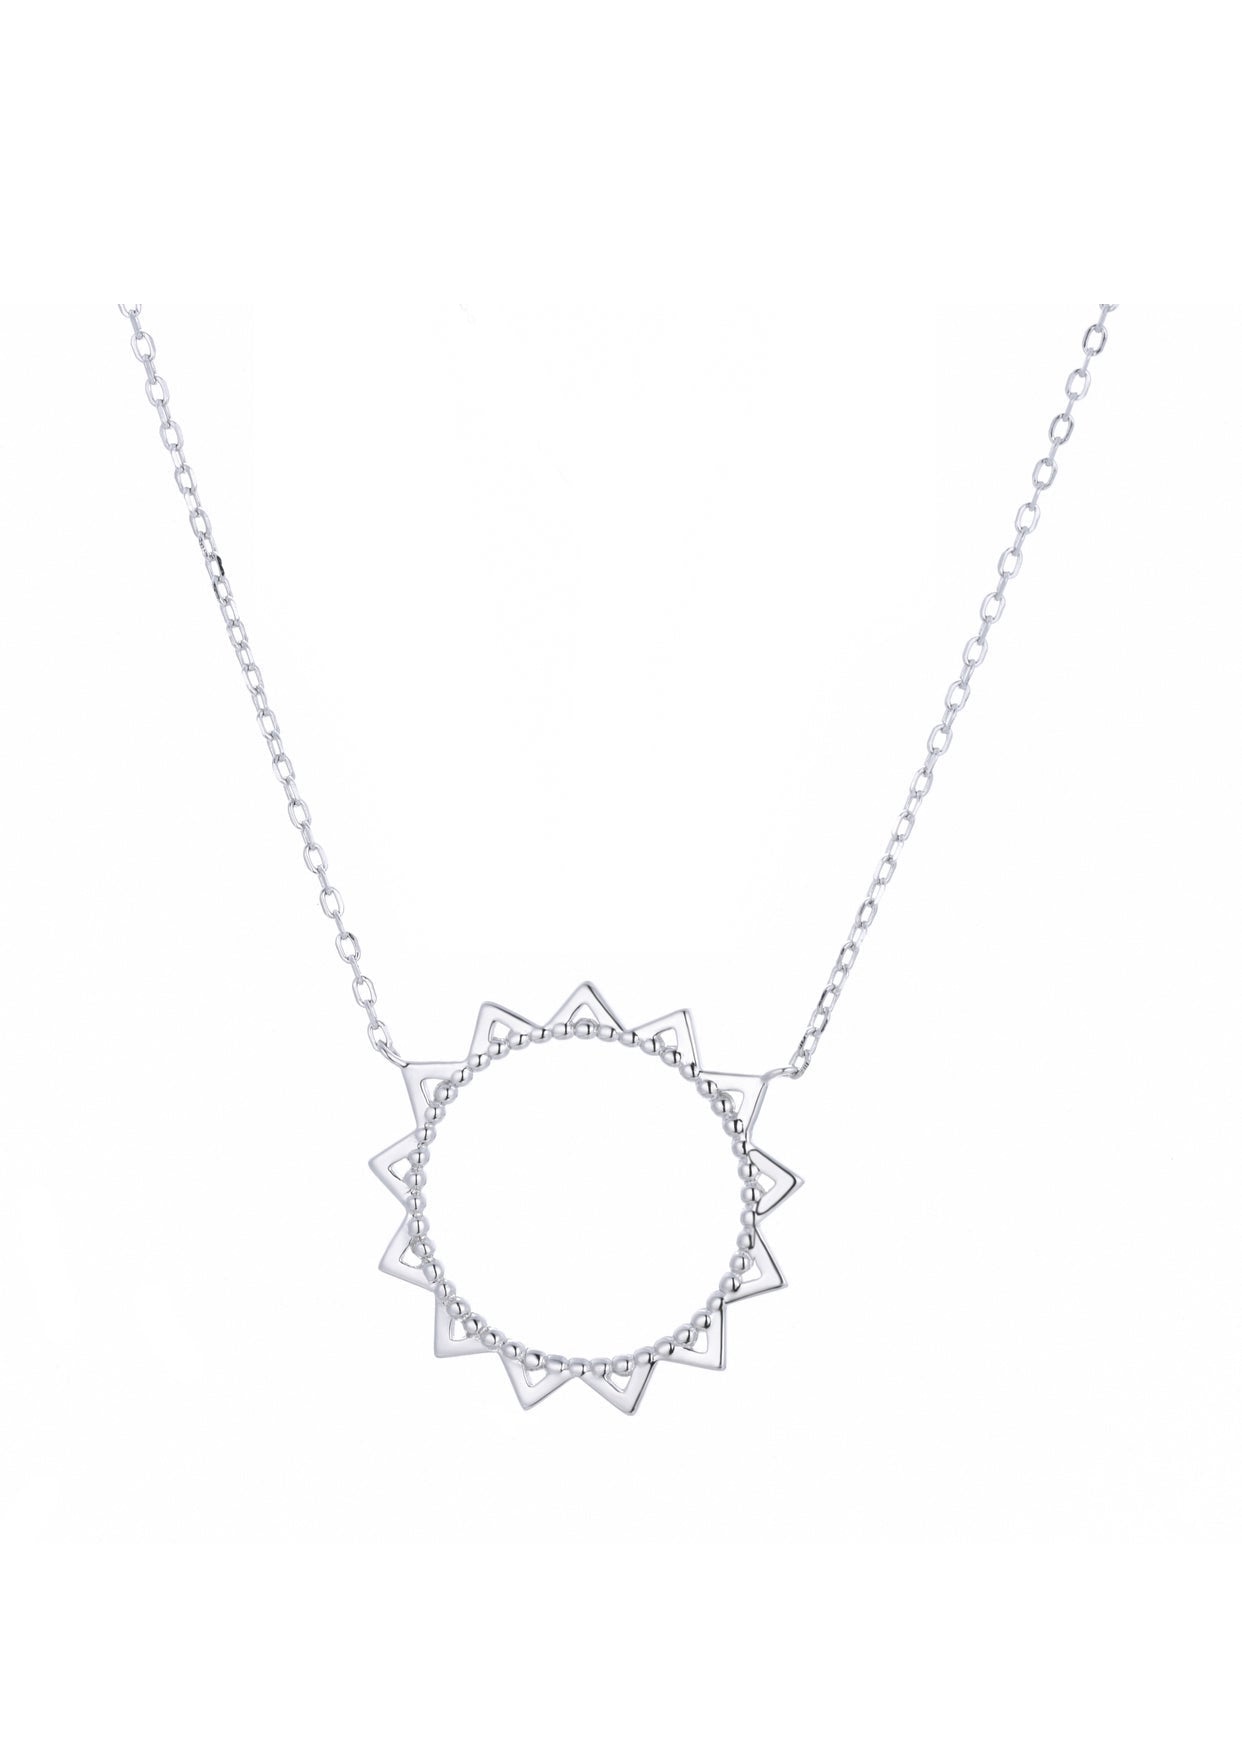 sol silver necklace 